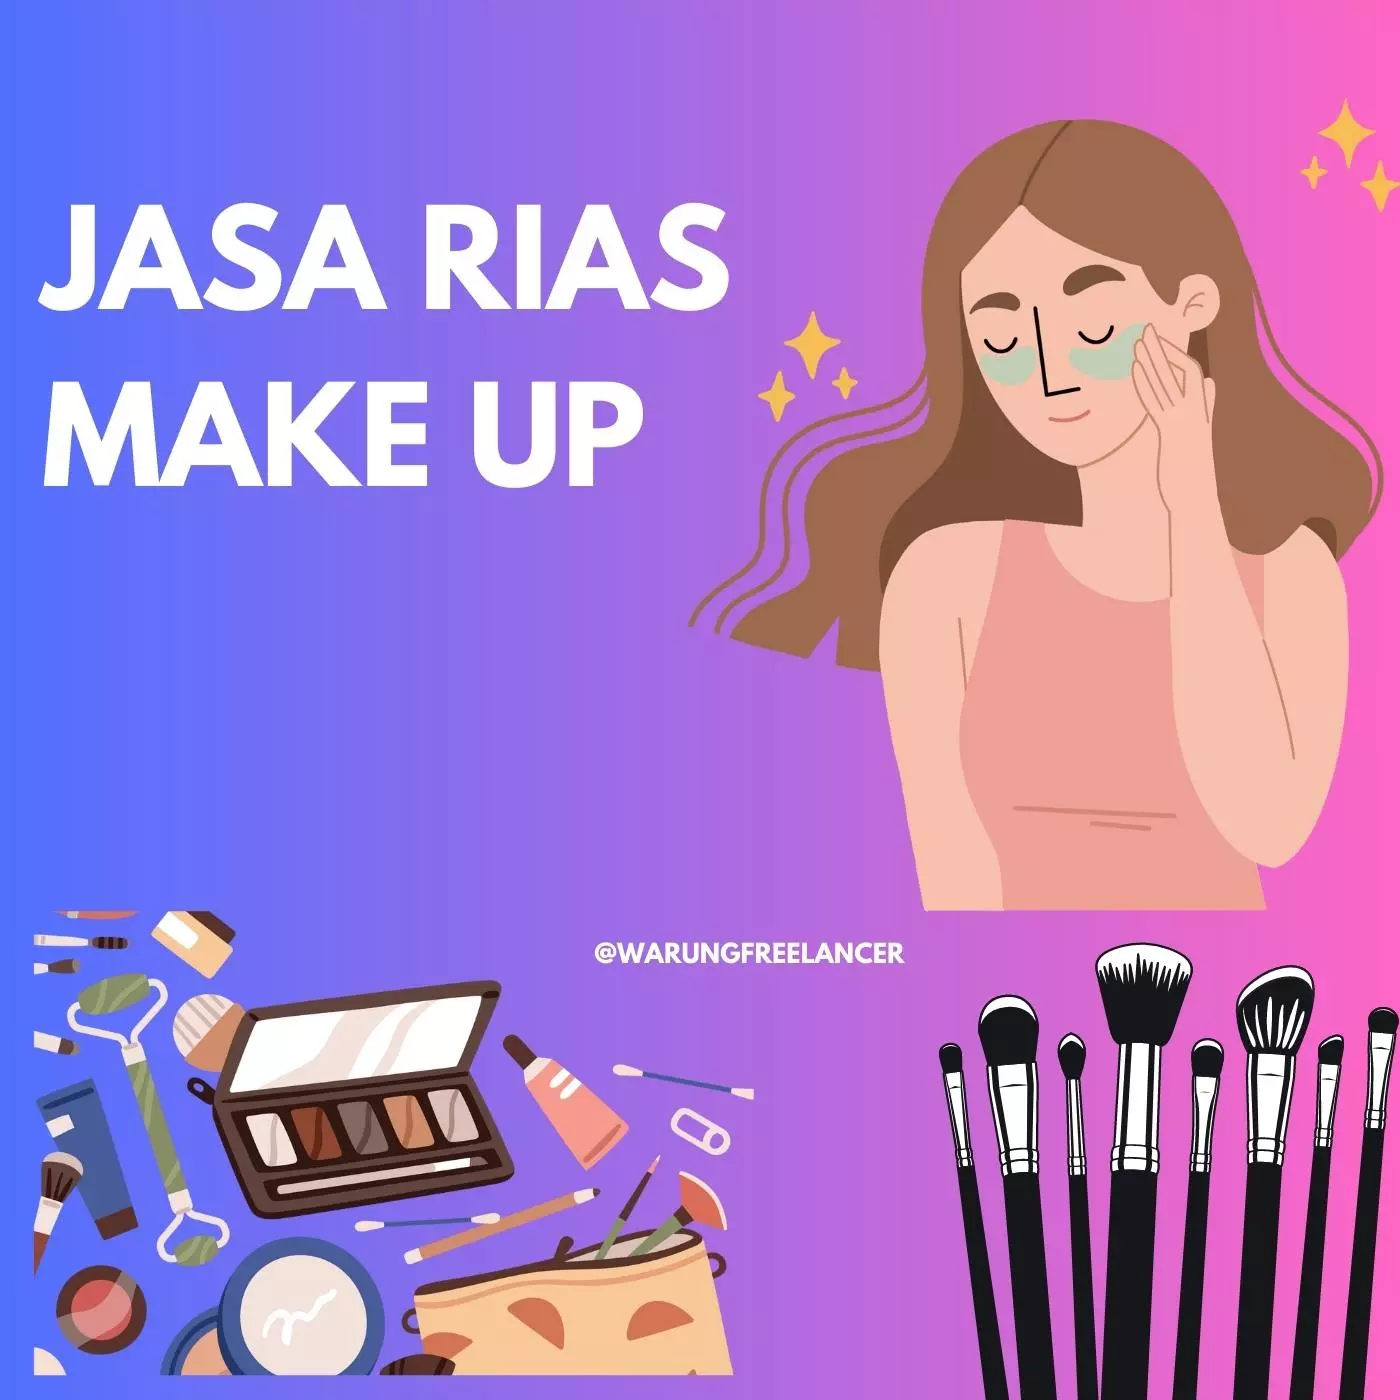 Jasa Rias Make Up